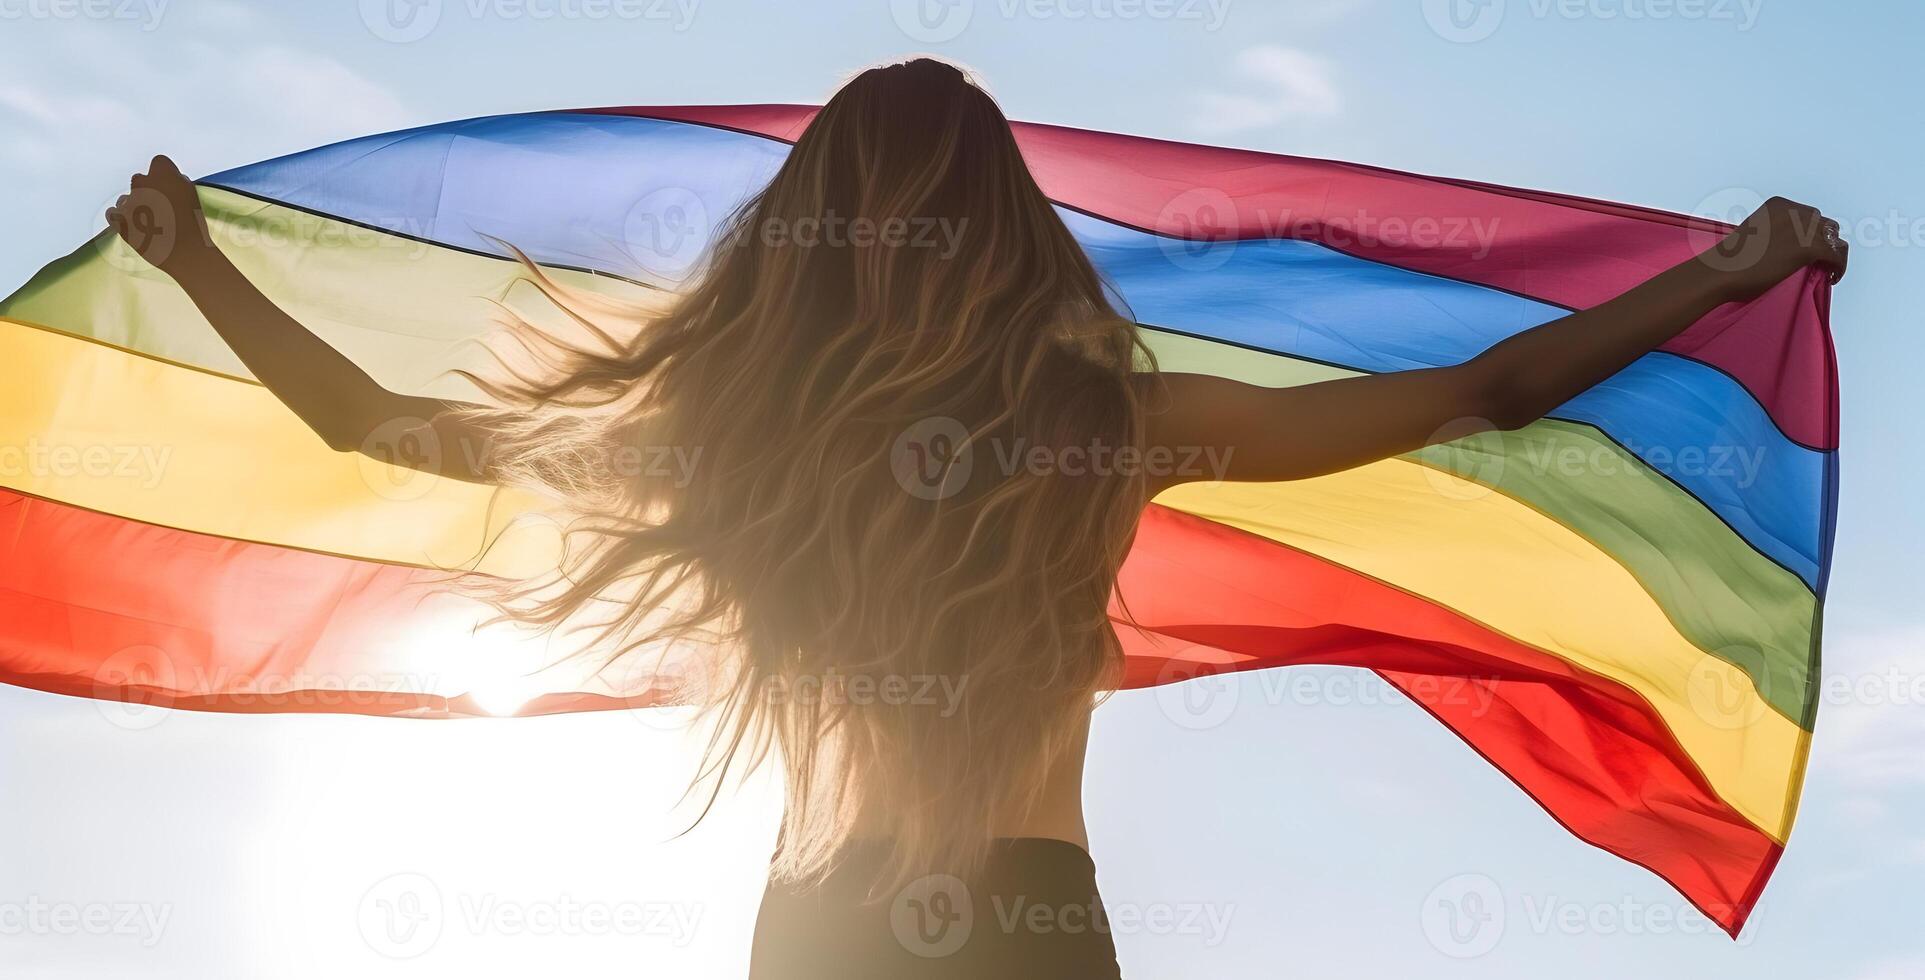 Drapeau arc-en-ciel fait main de la fierté gaie Drapeau LGBT 3 x 5